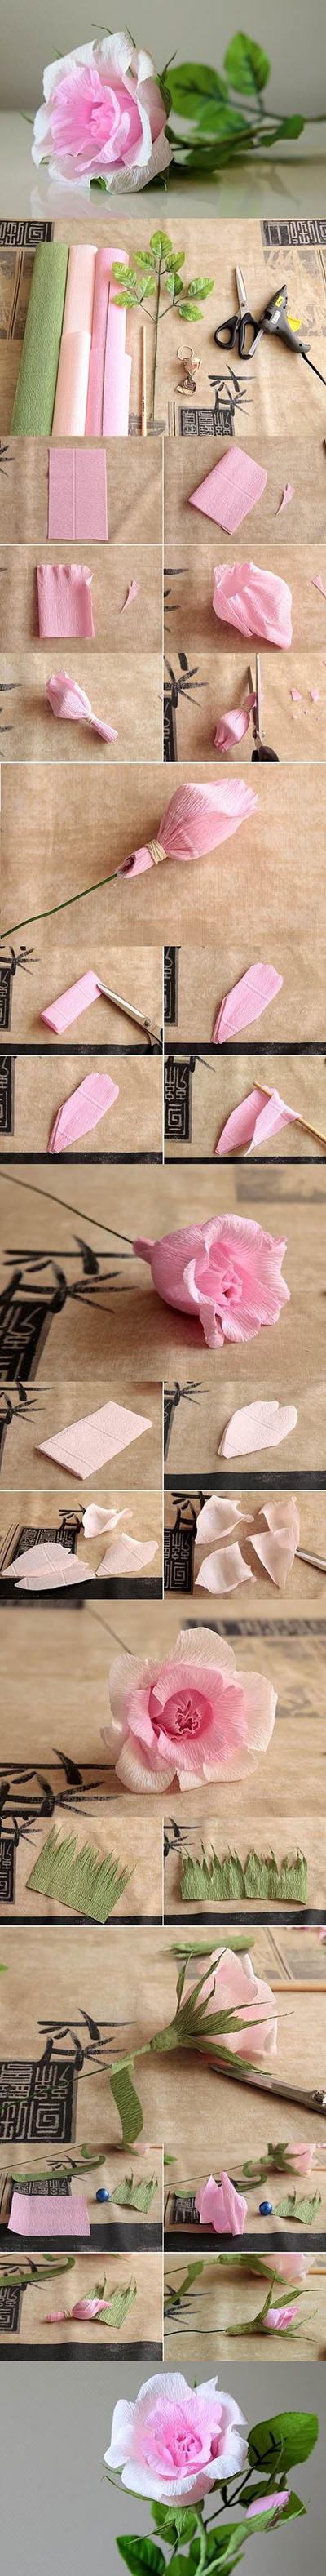 15  DIY Beautiful Crepe Paper Roses30a83c947